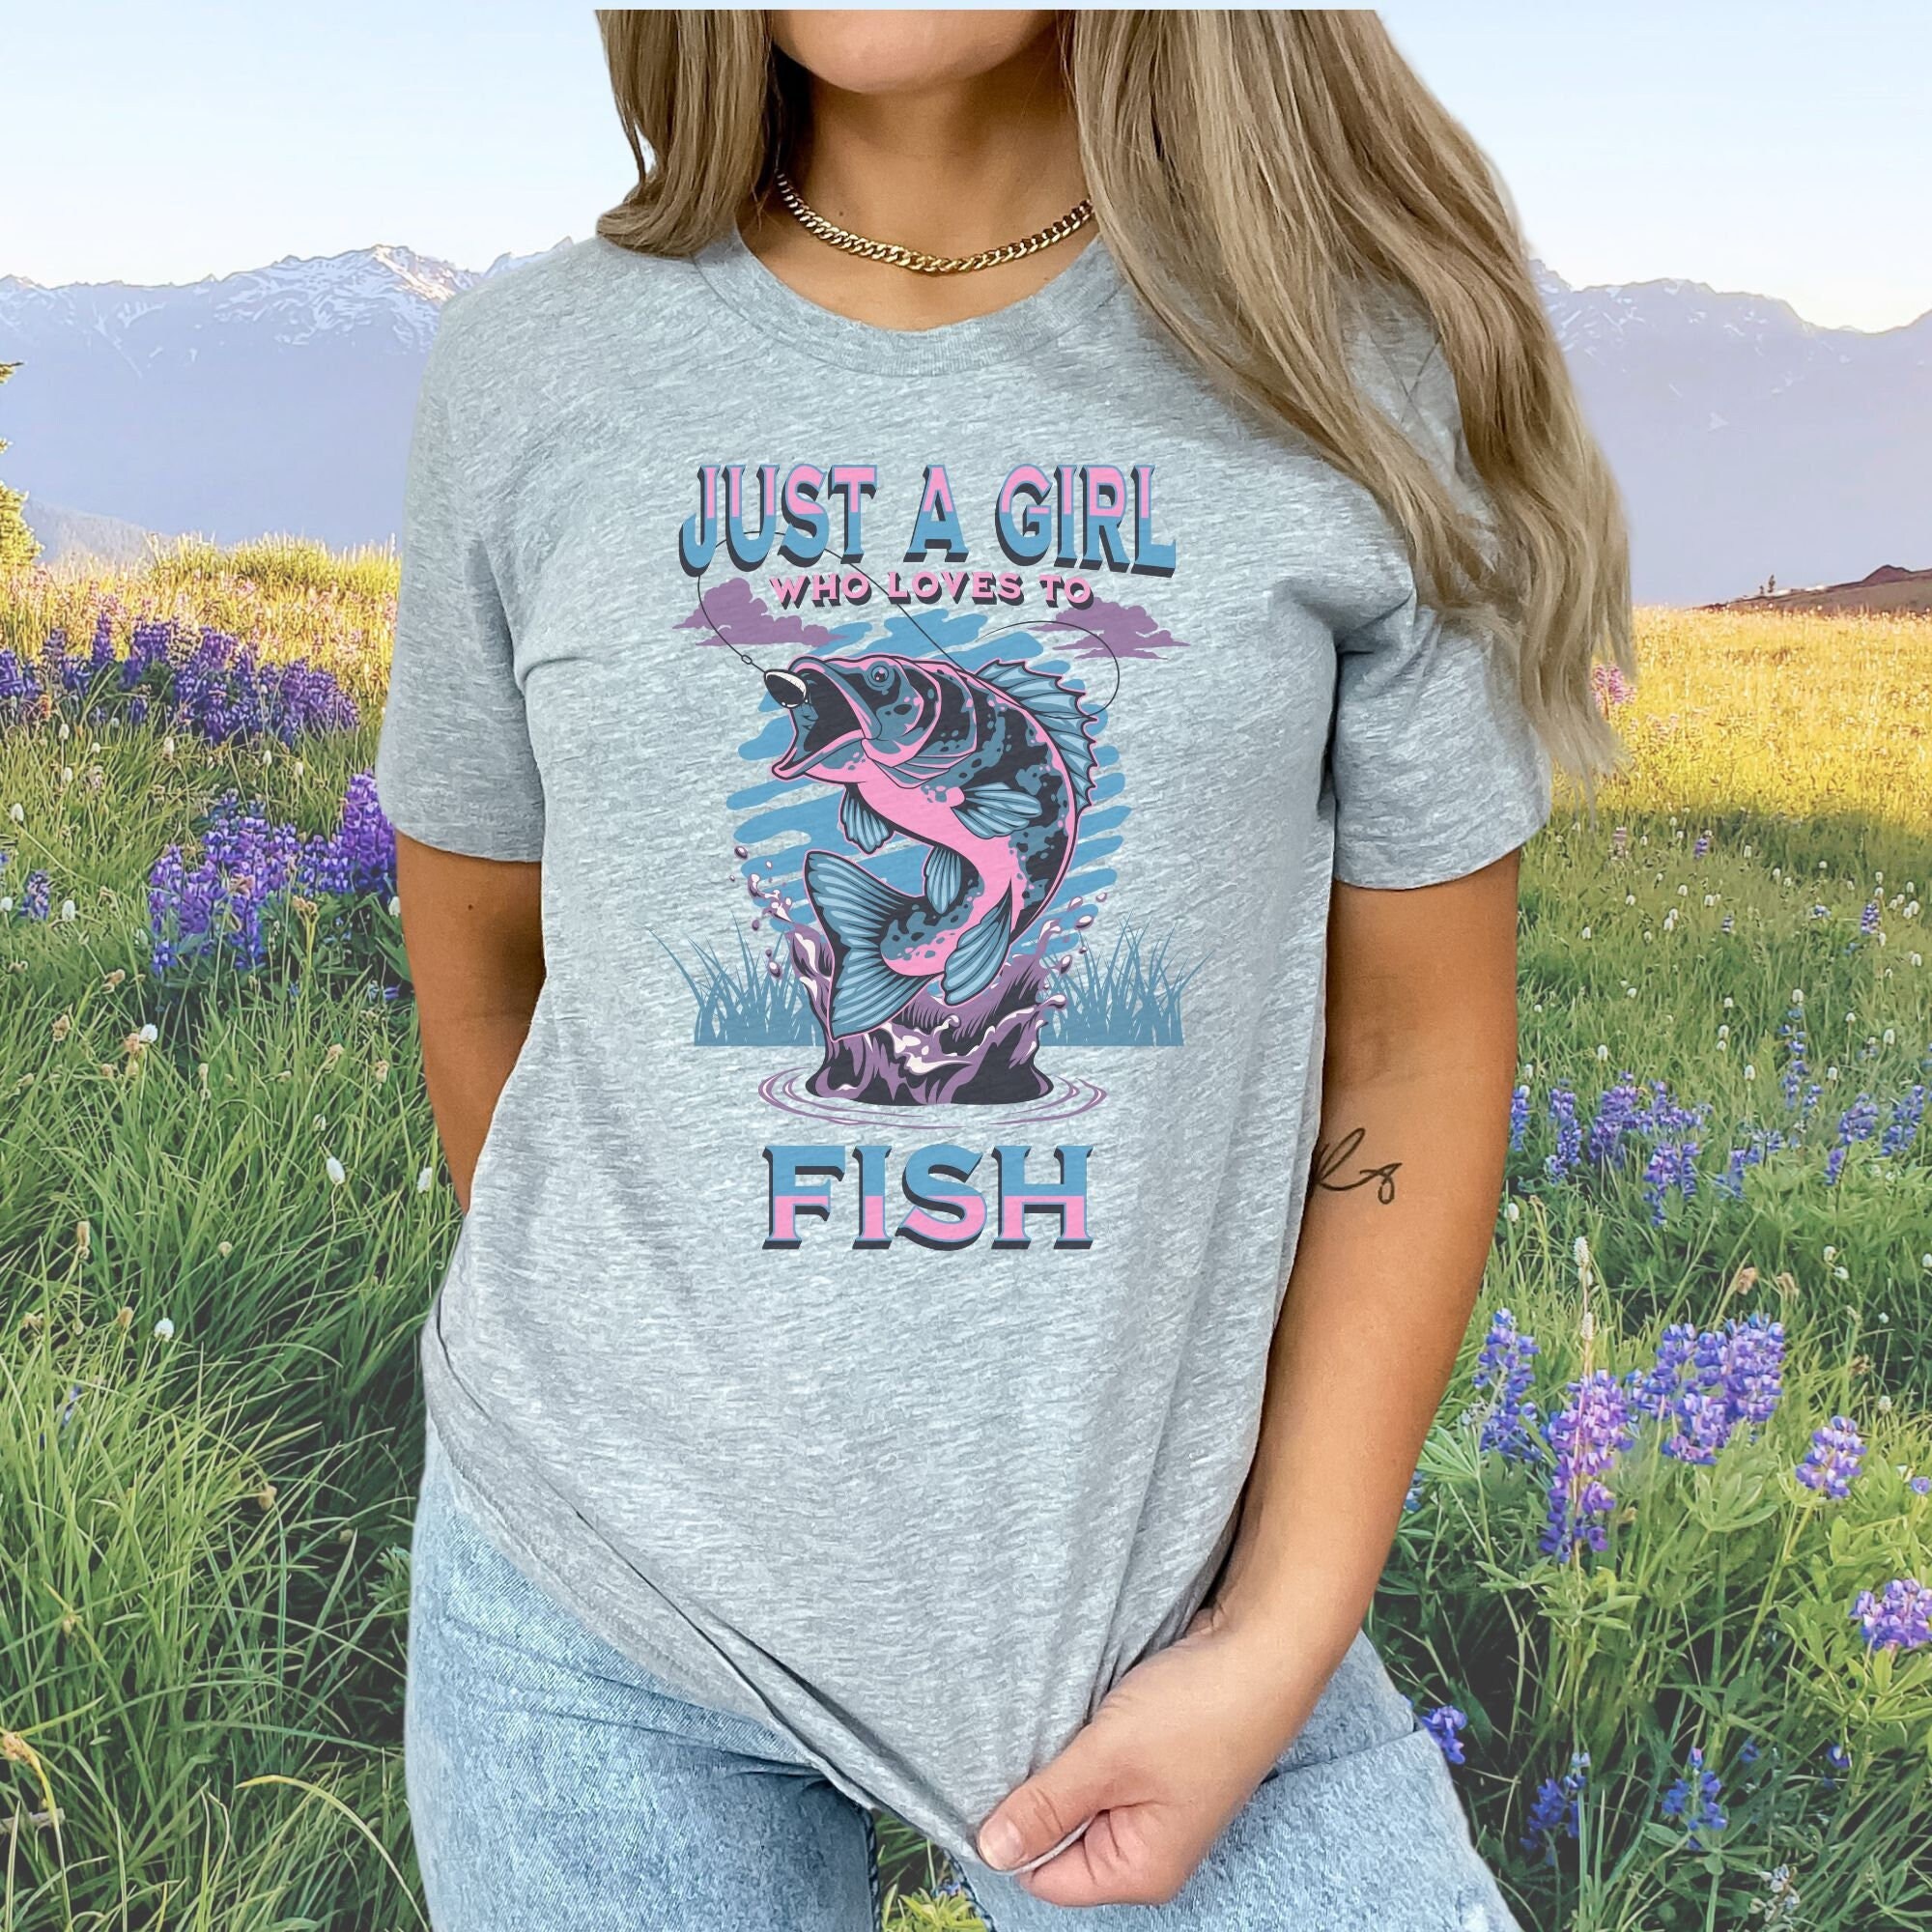 8 Women's fishing apparel ideas  fishing outfits, fishing women, fishing  shirts